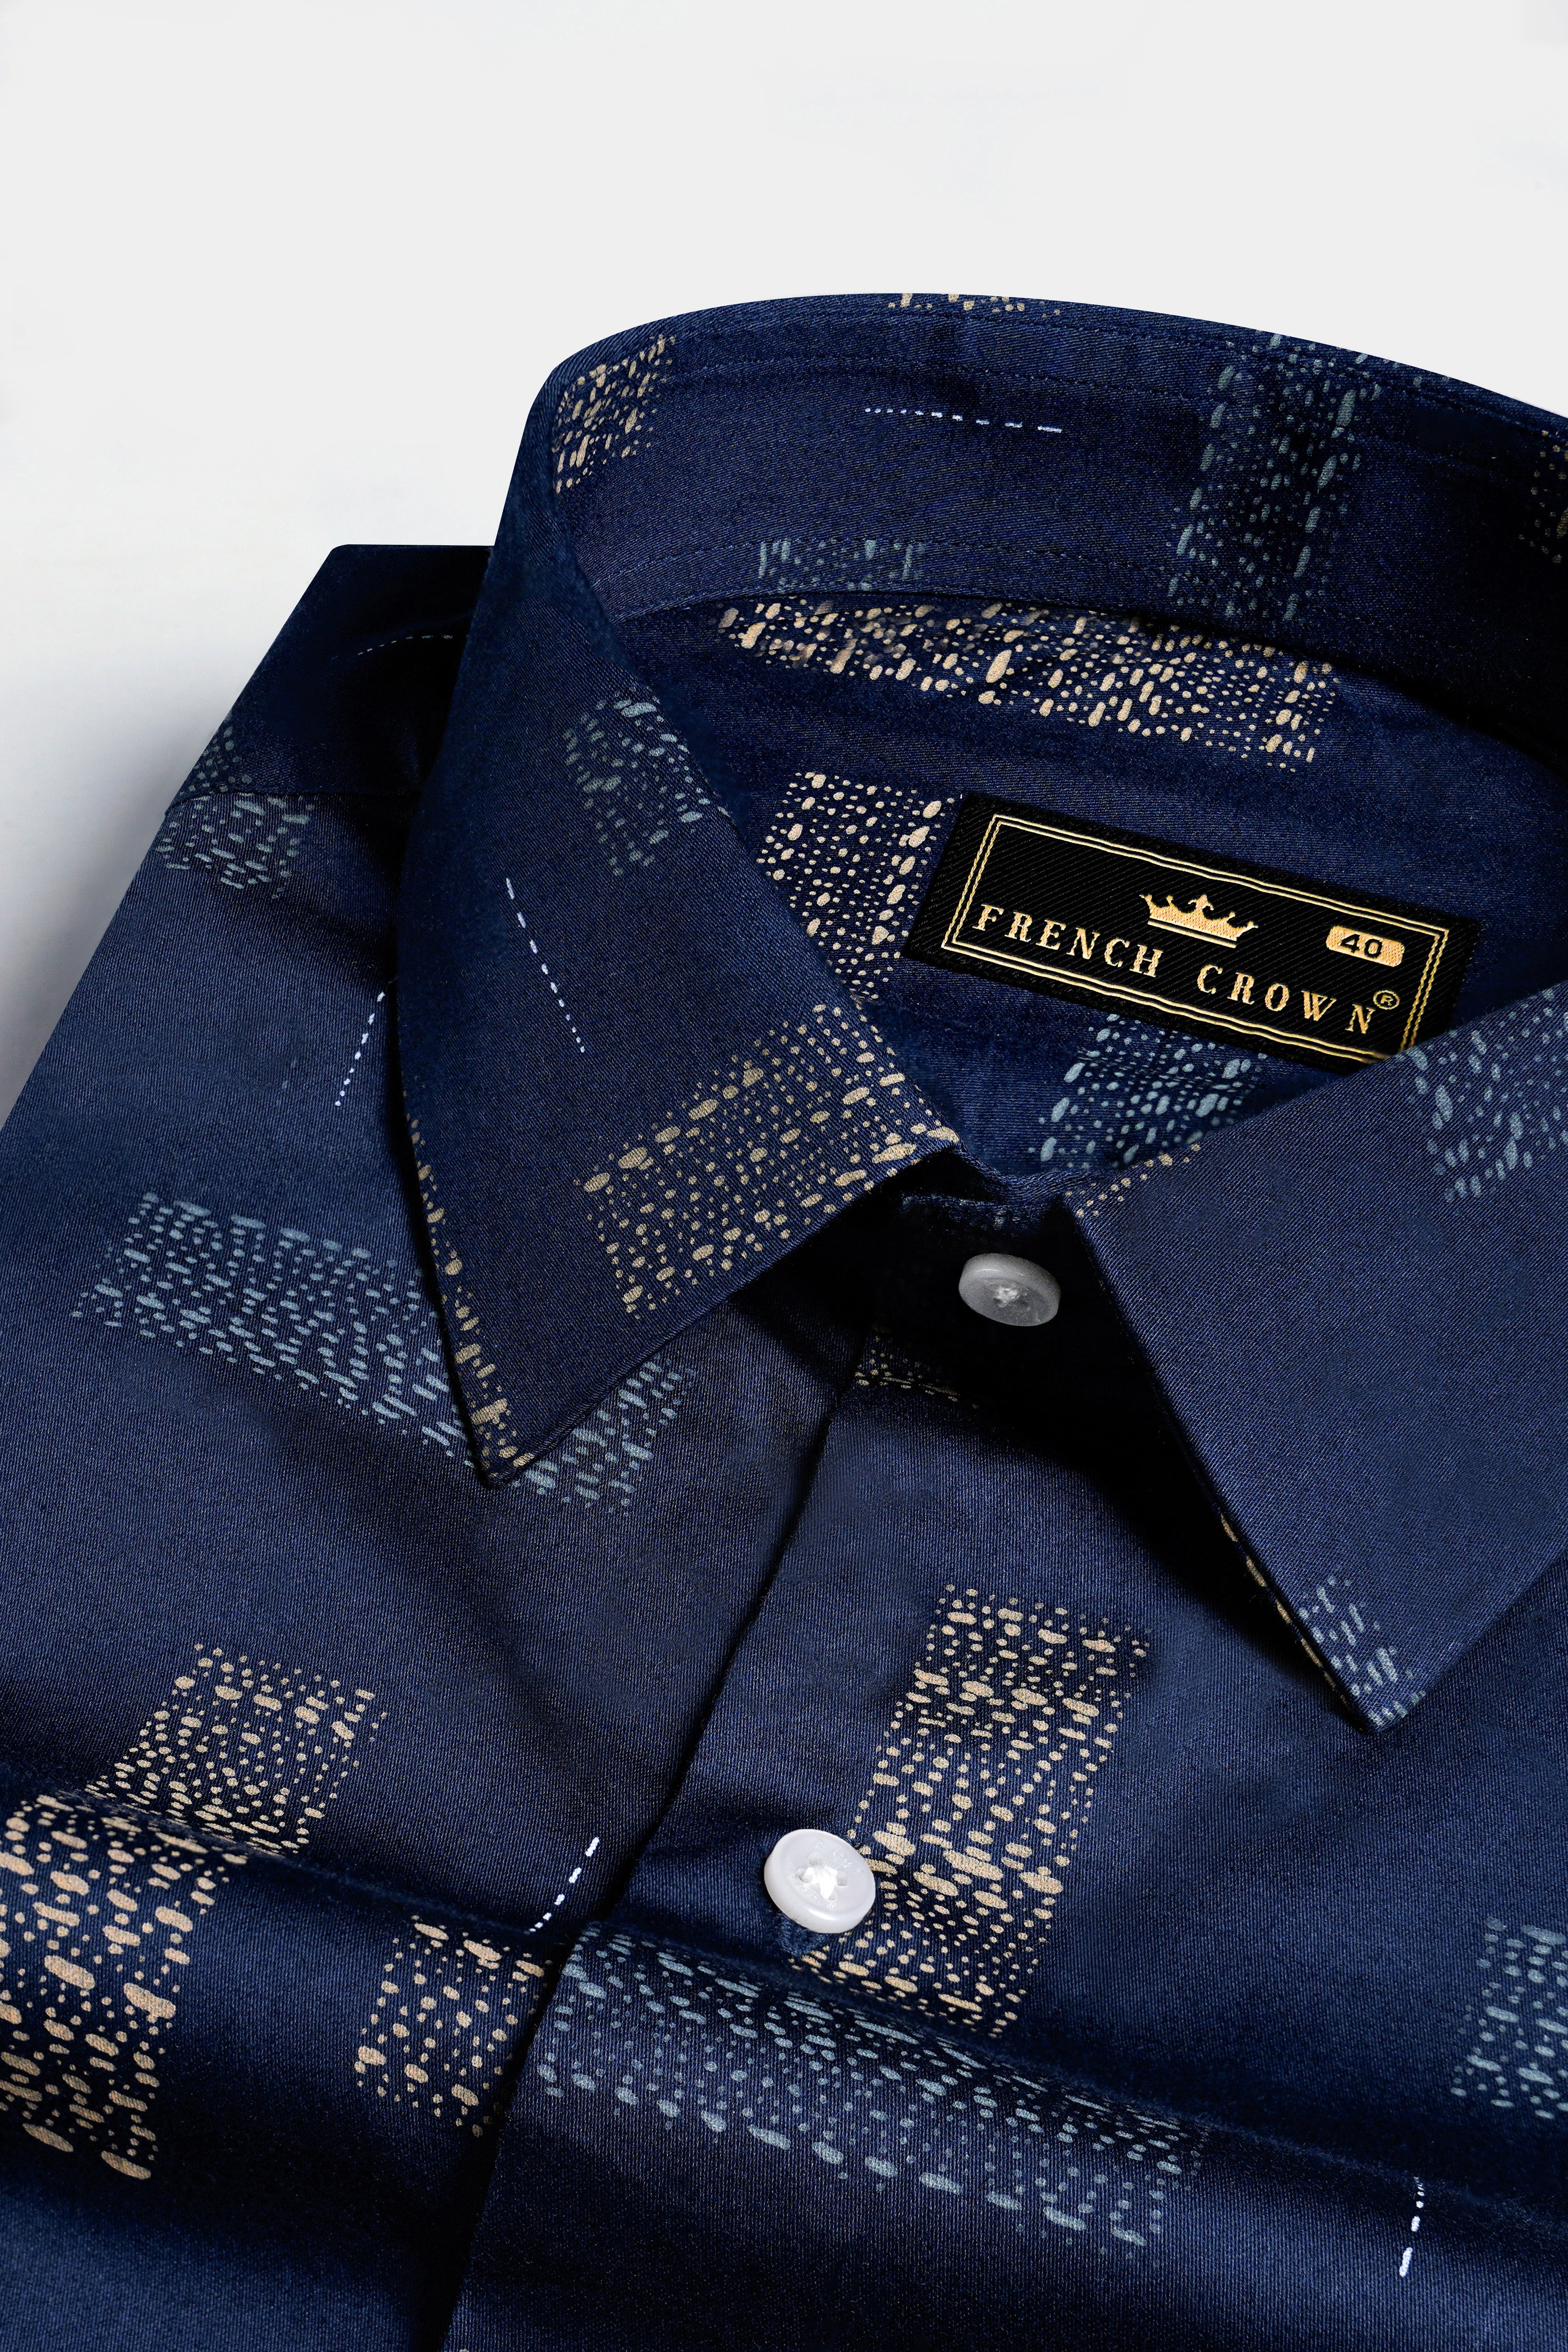 Mirage Navy Blue Printed Super Soft Premium Cotton Shirt